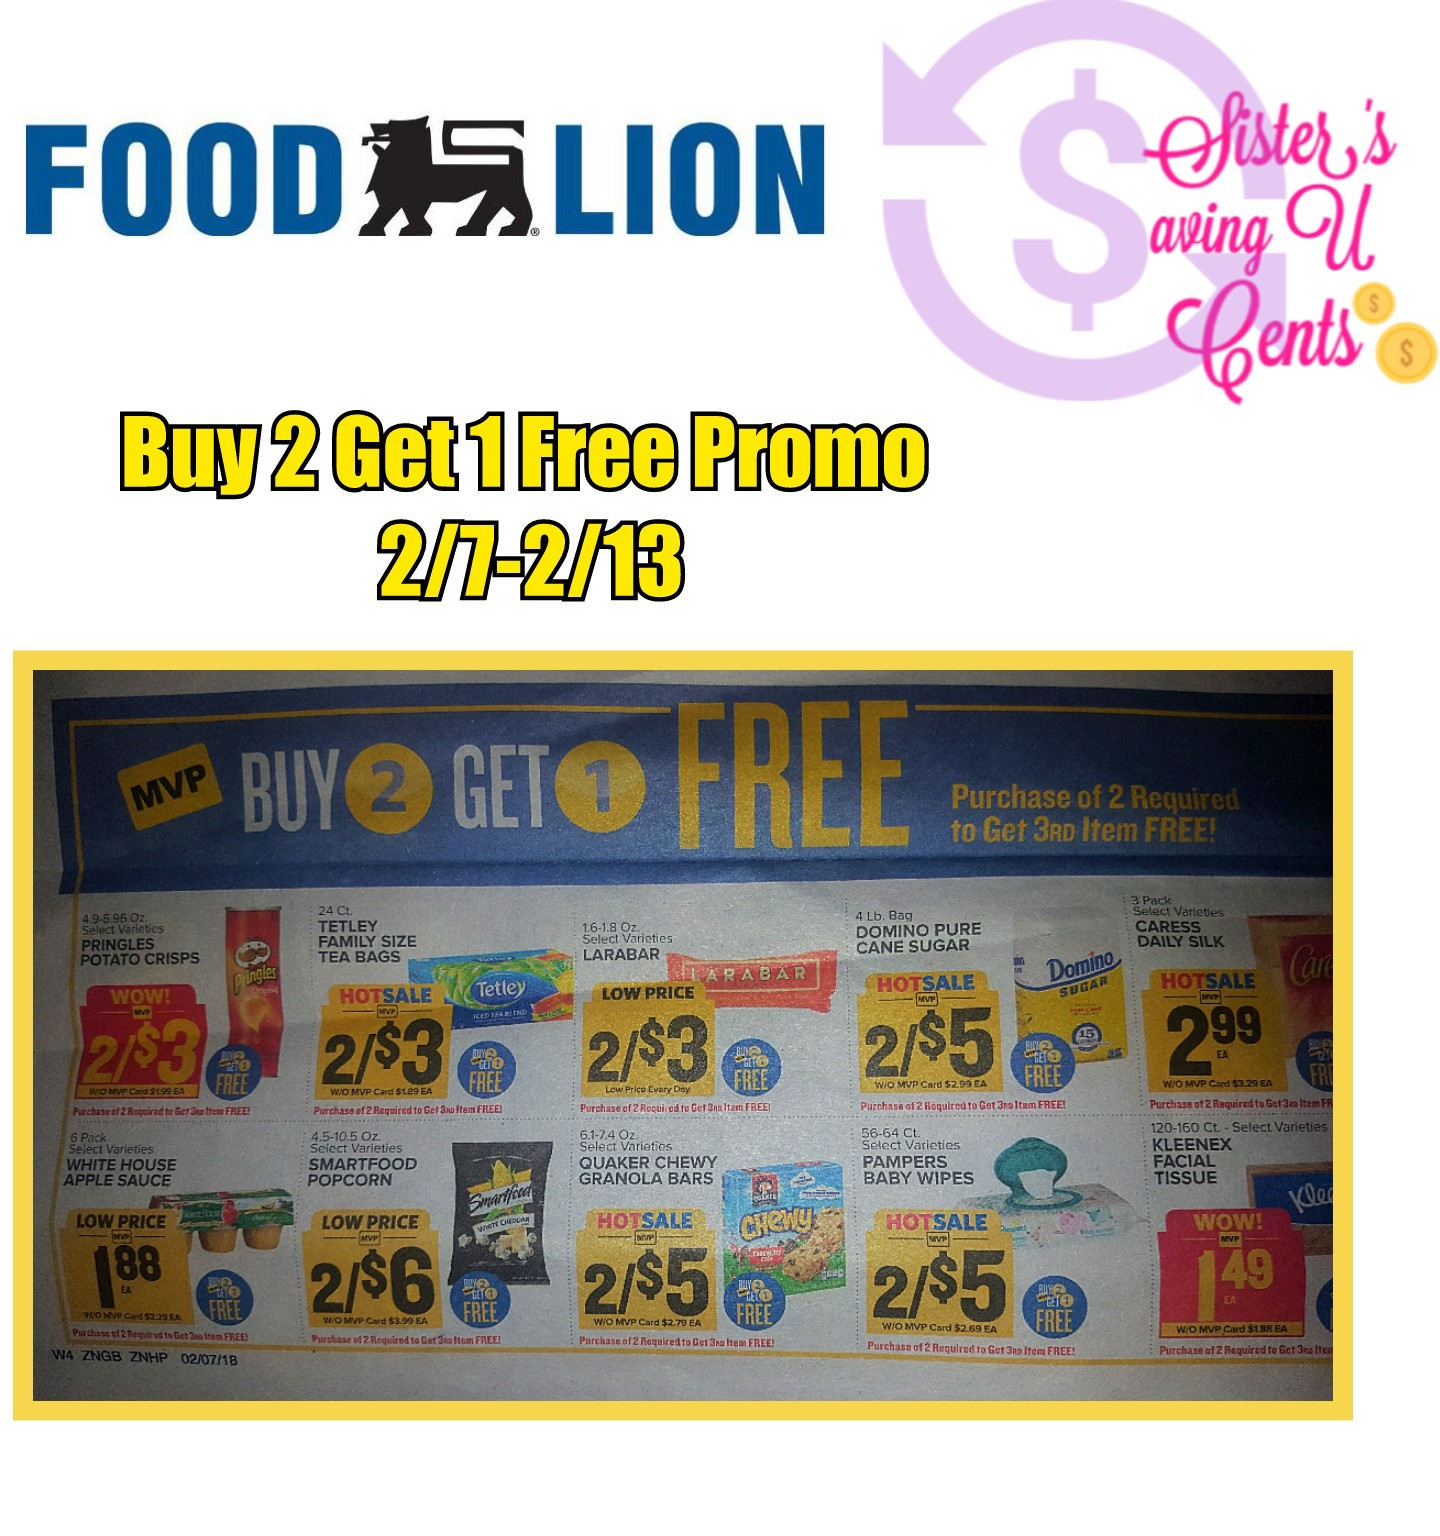 Food Lion Buy 2 Get 1 Free Promo 2/72/13!!